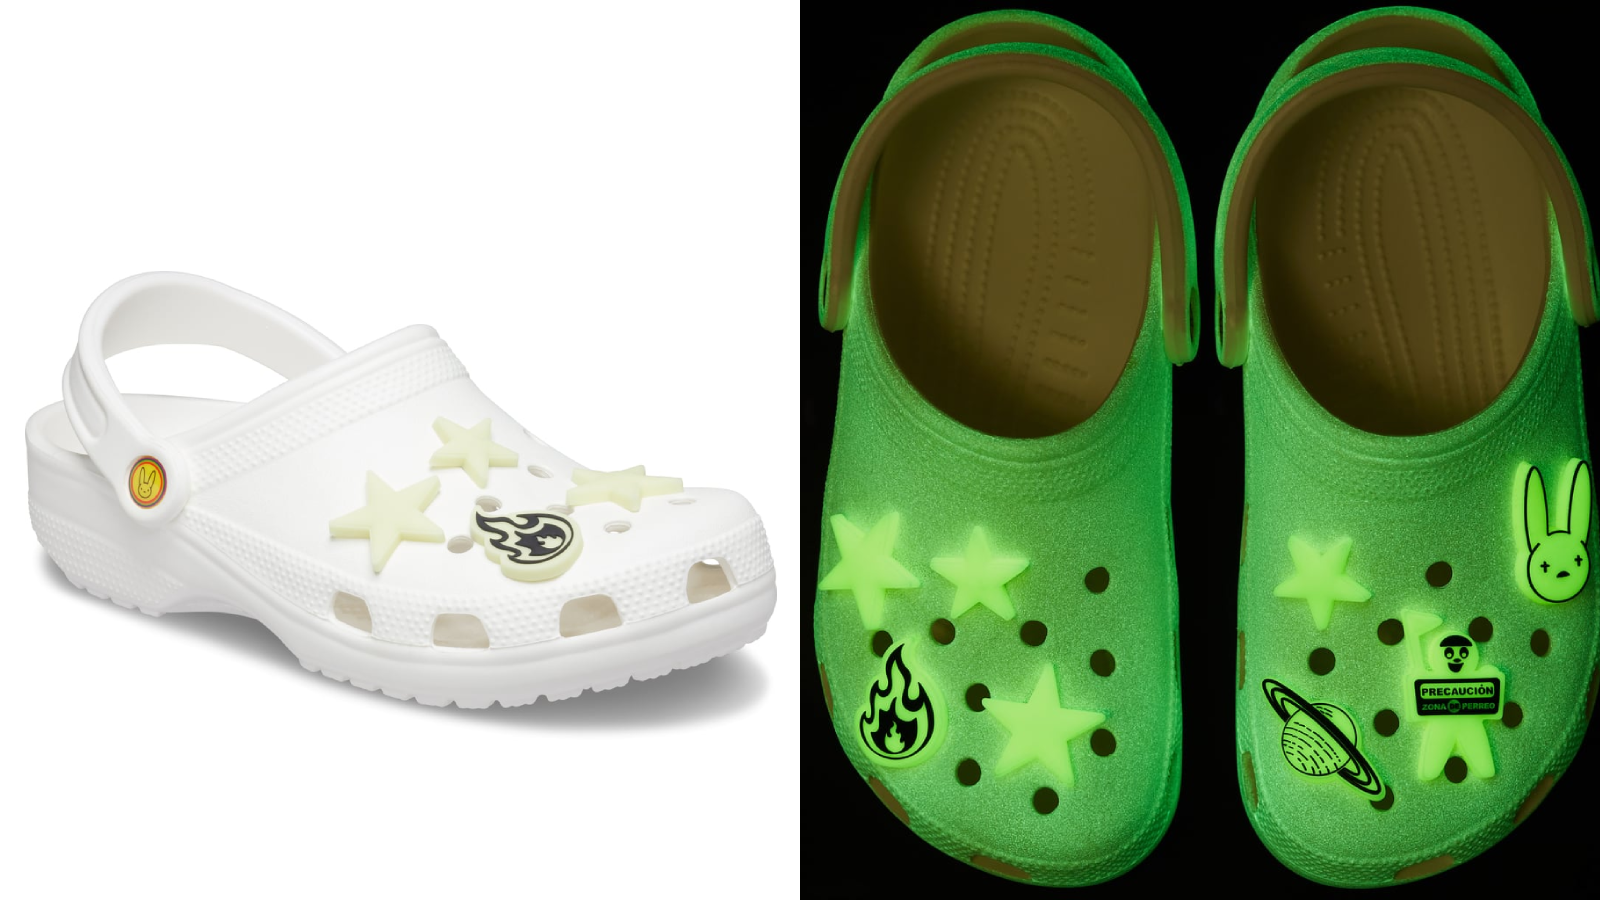 buy Bad Bunny's glow-in-the-dark Crocs 